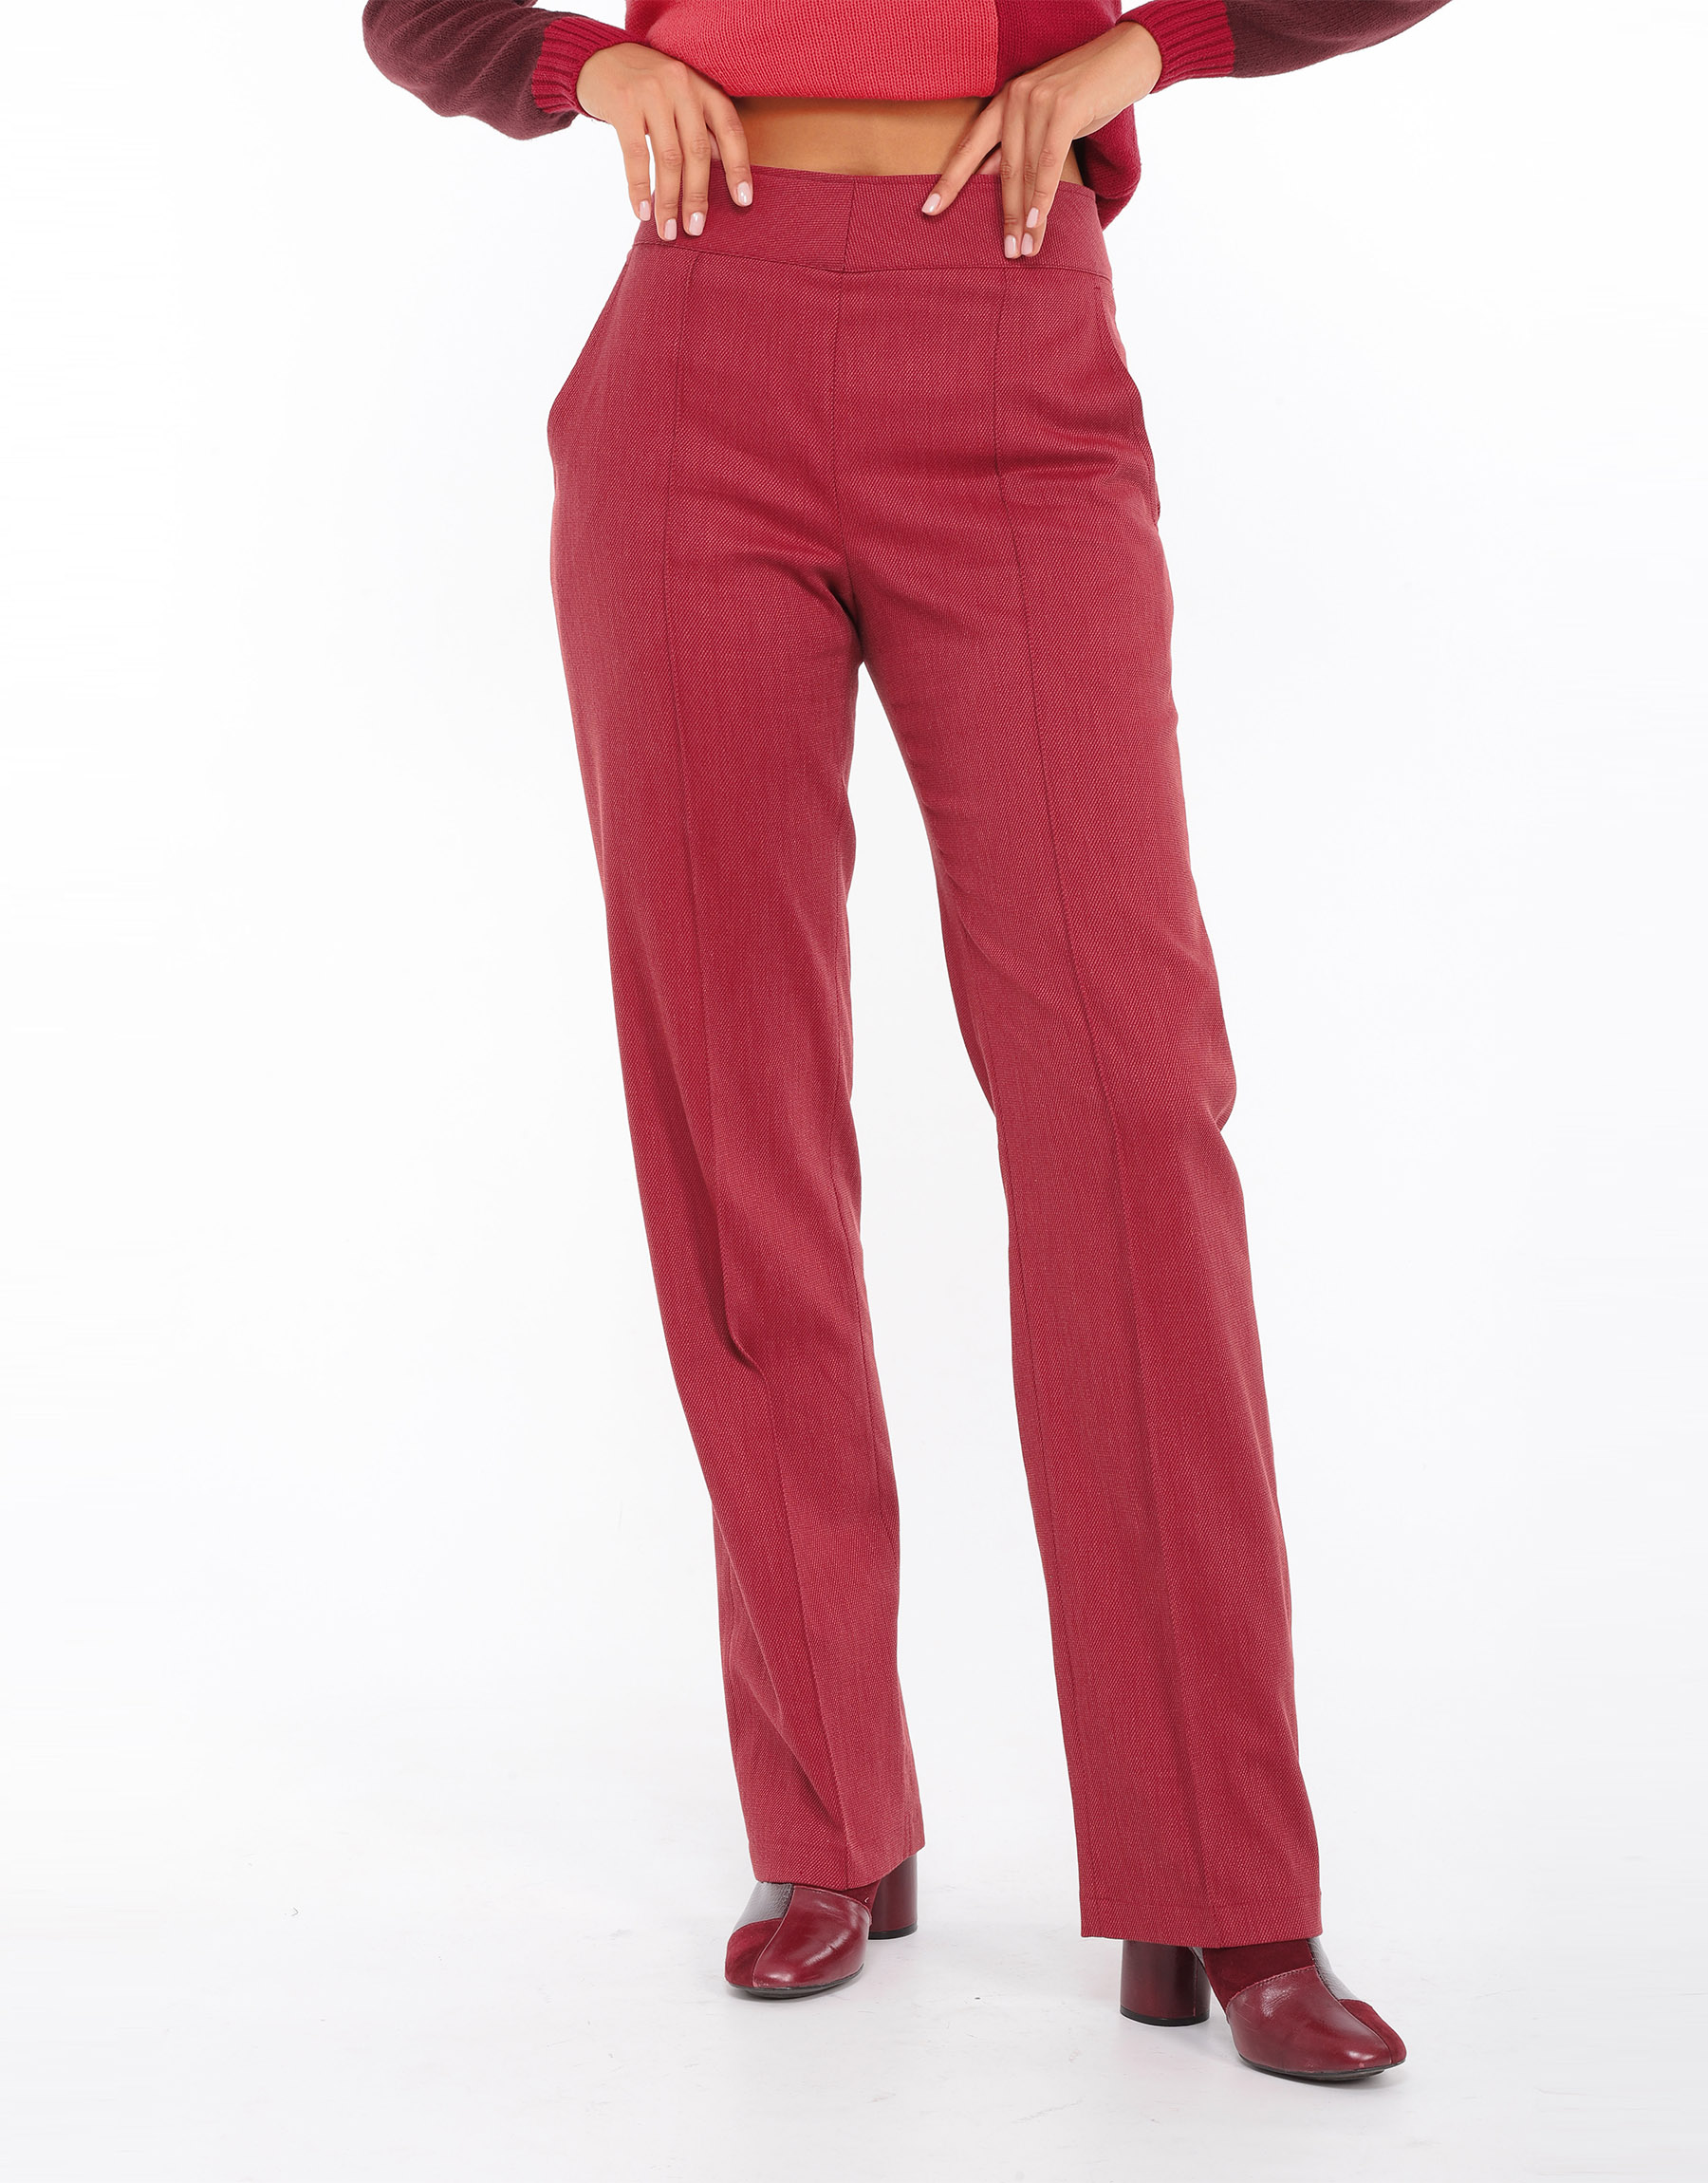 Pantalon droit taille haute en laine irisée noir ou coton et soie rouge